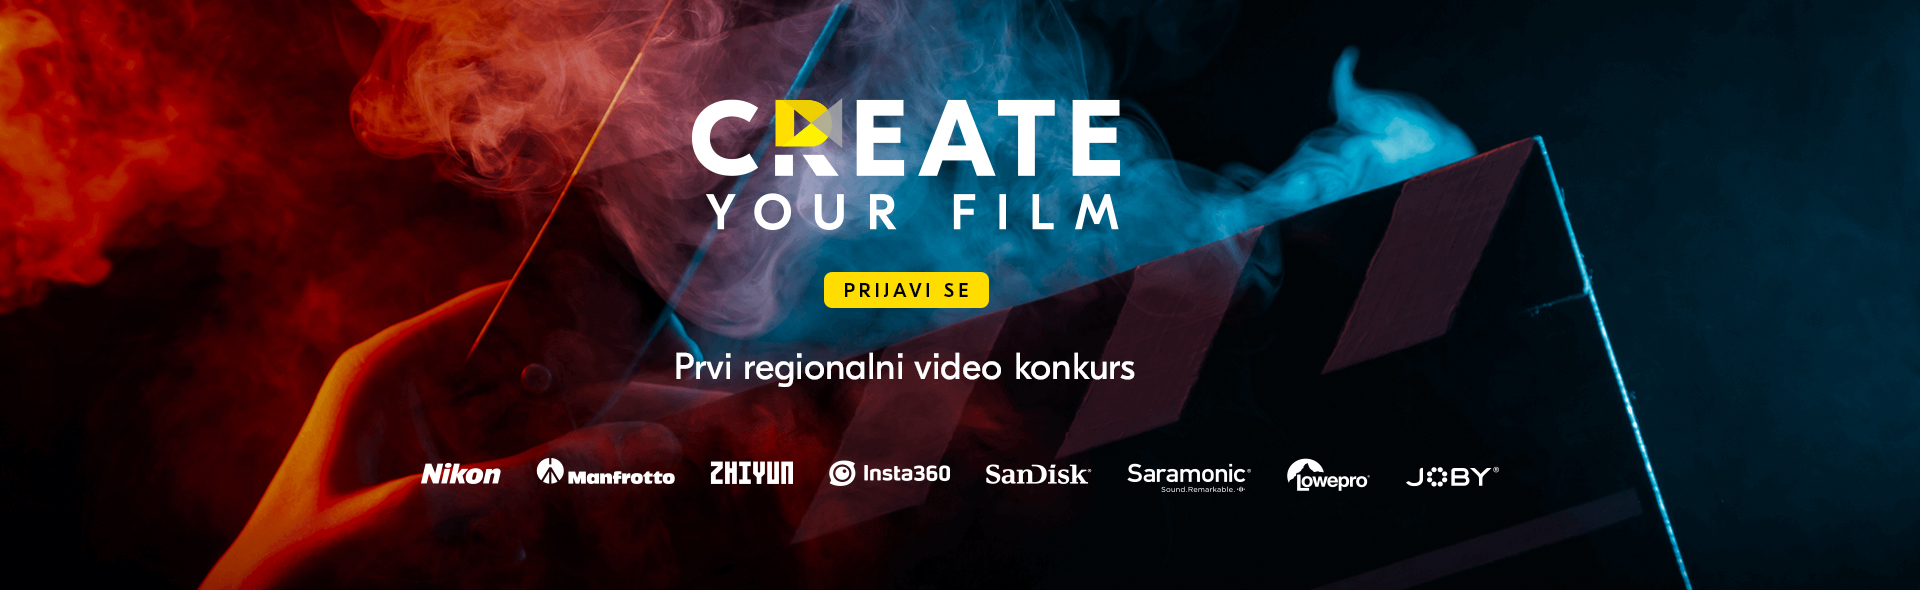 Create your film